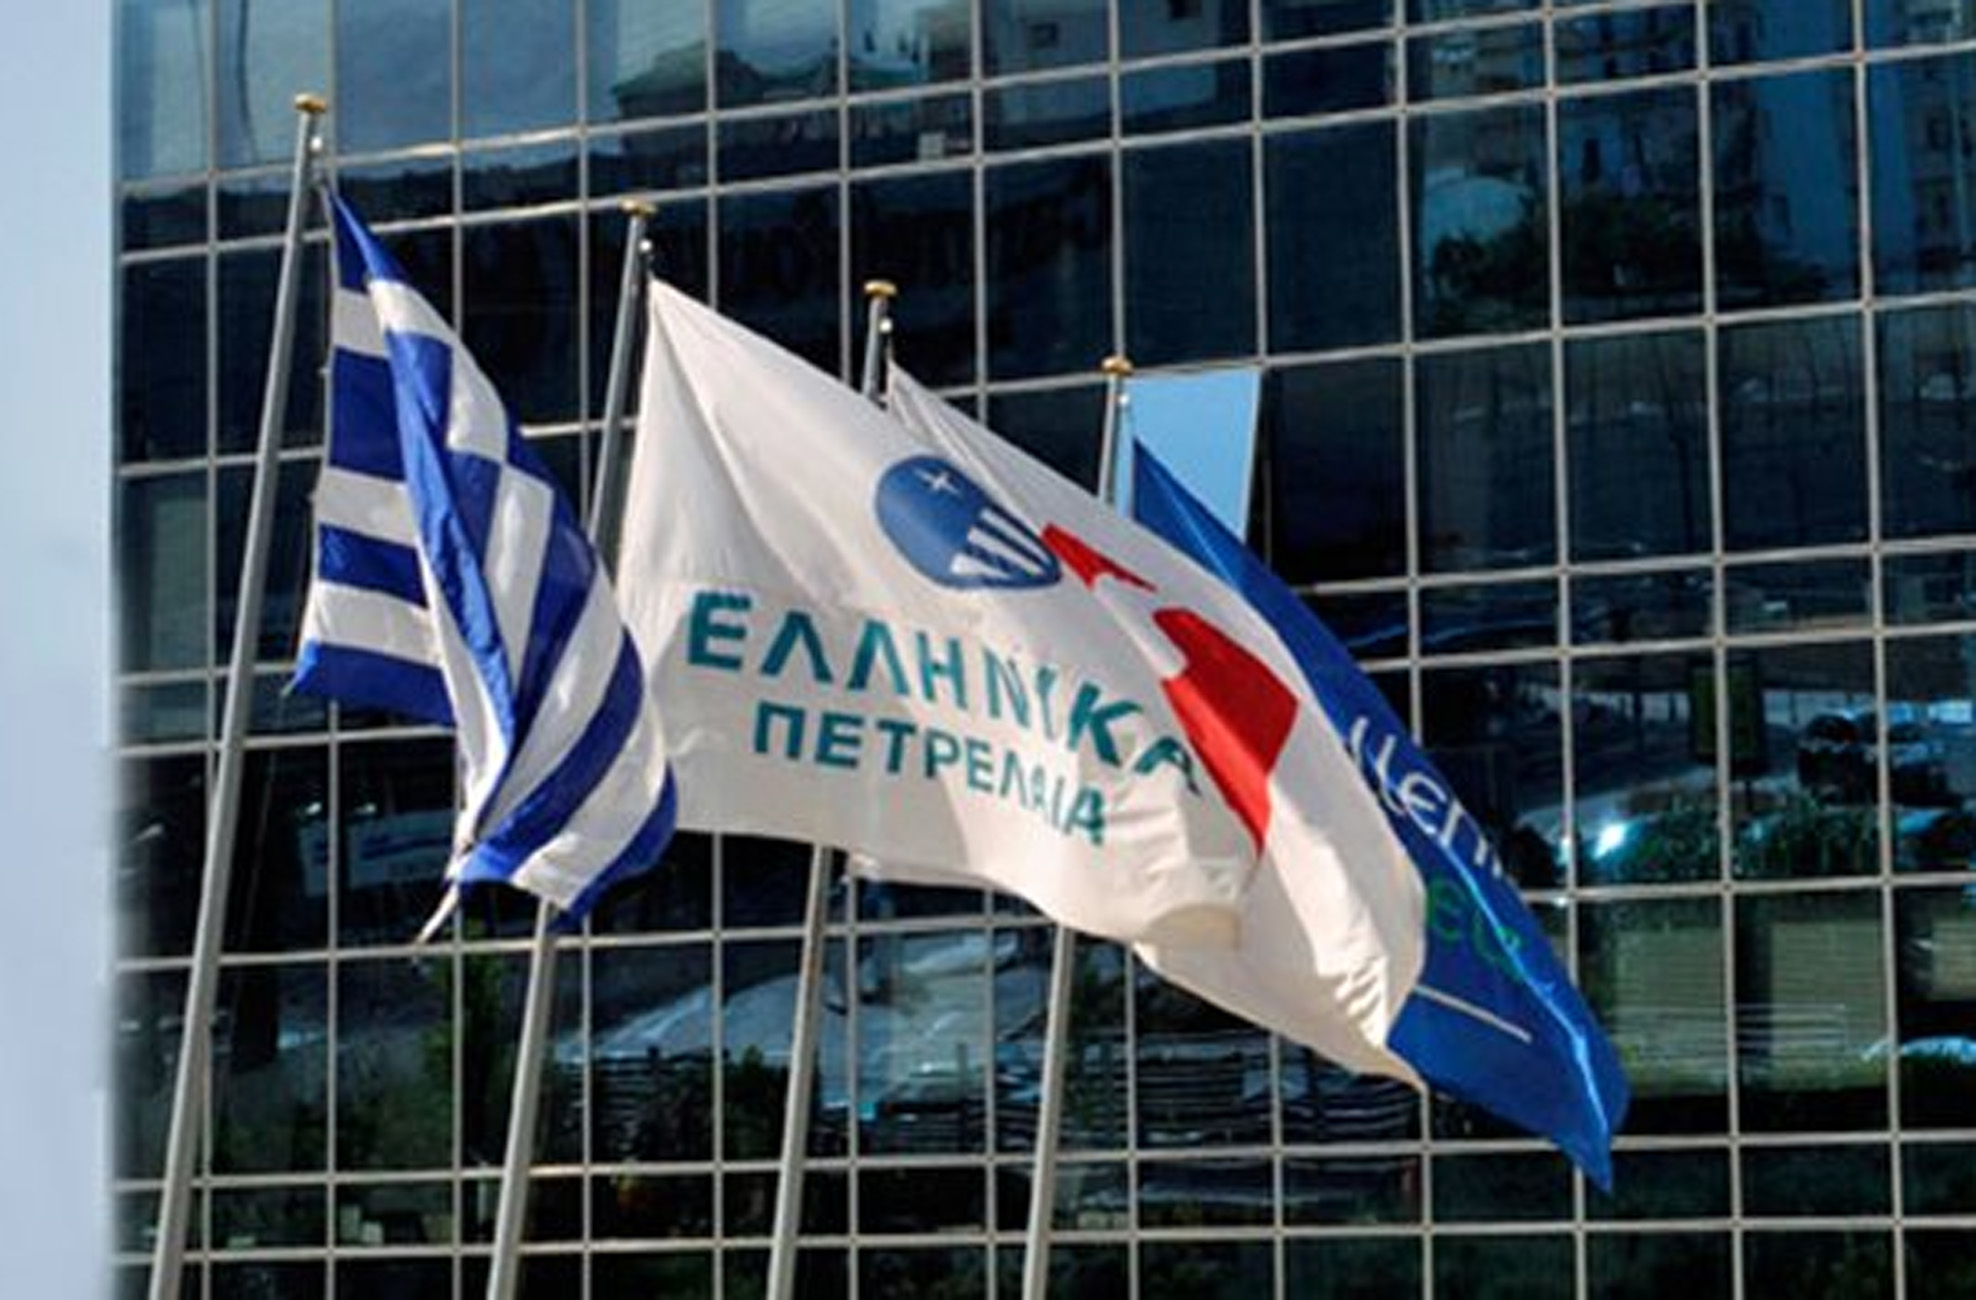 Α. Σιάμισης, Ελληνικά Πετρέλαια: Ρεκόρ κερδών στο β’ τρίμηνο του έτους – Νέα σχέδια σε διύλιση κι ενέργεια